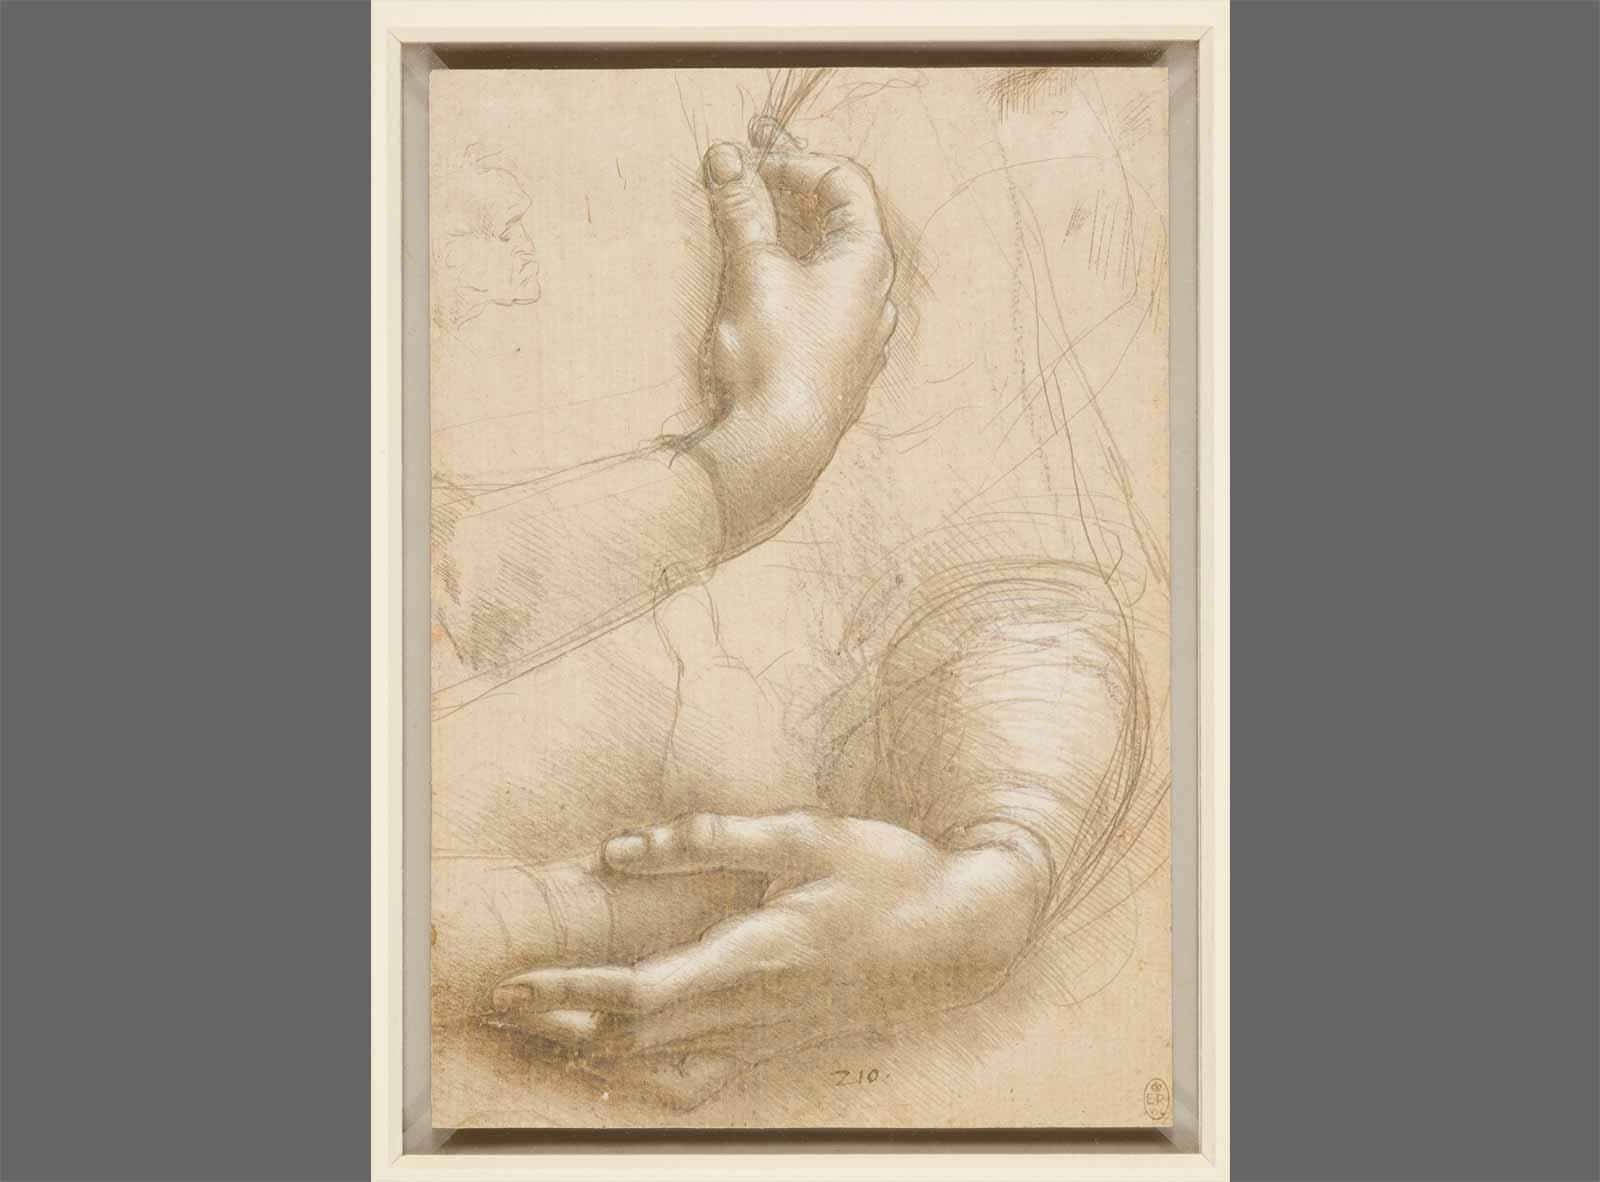 Leonardo da Vinci Woman’s Arms and Hands; a Small Man’s Head in Profile.